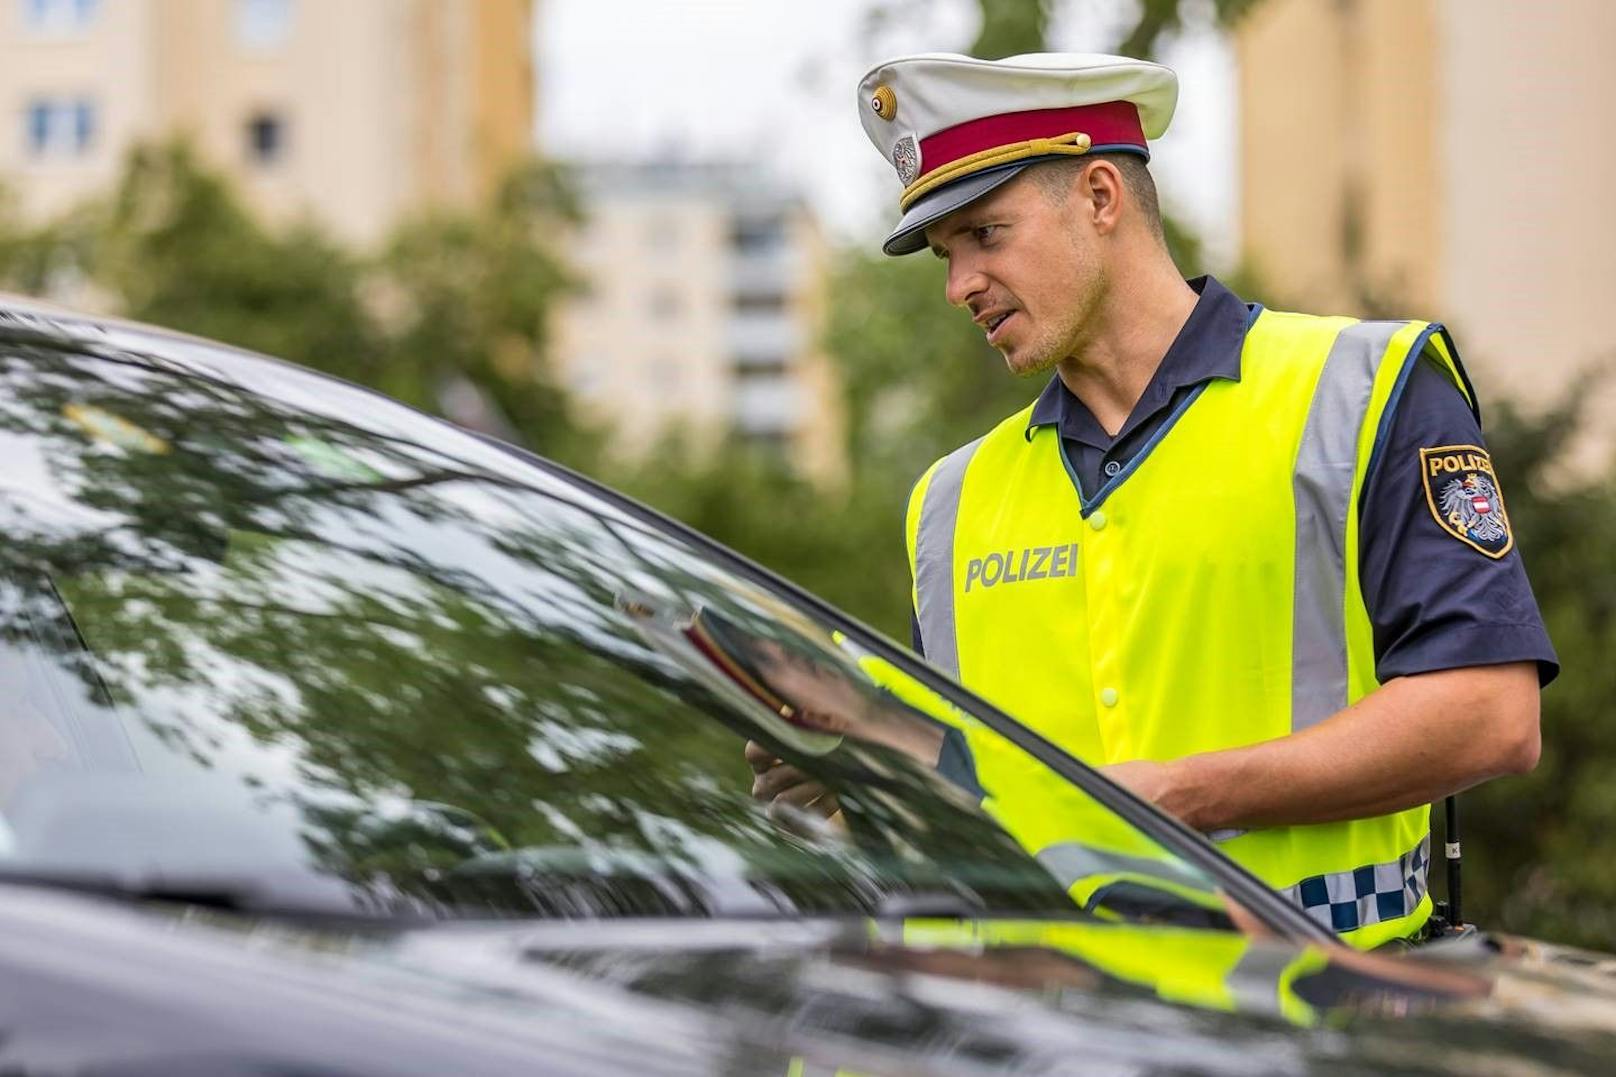 Verkehrskontrolle: Polizeikontrolle im Straßenverkehr